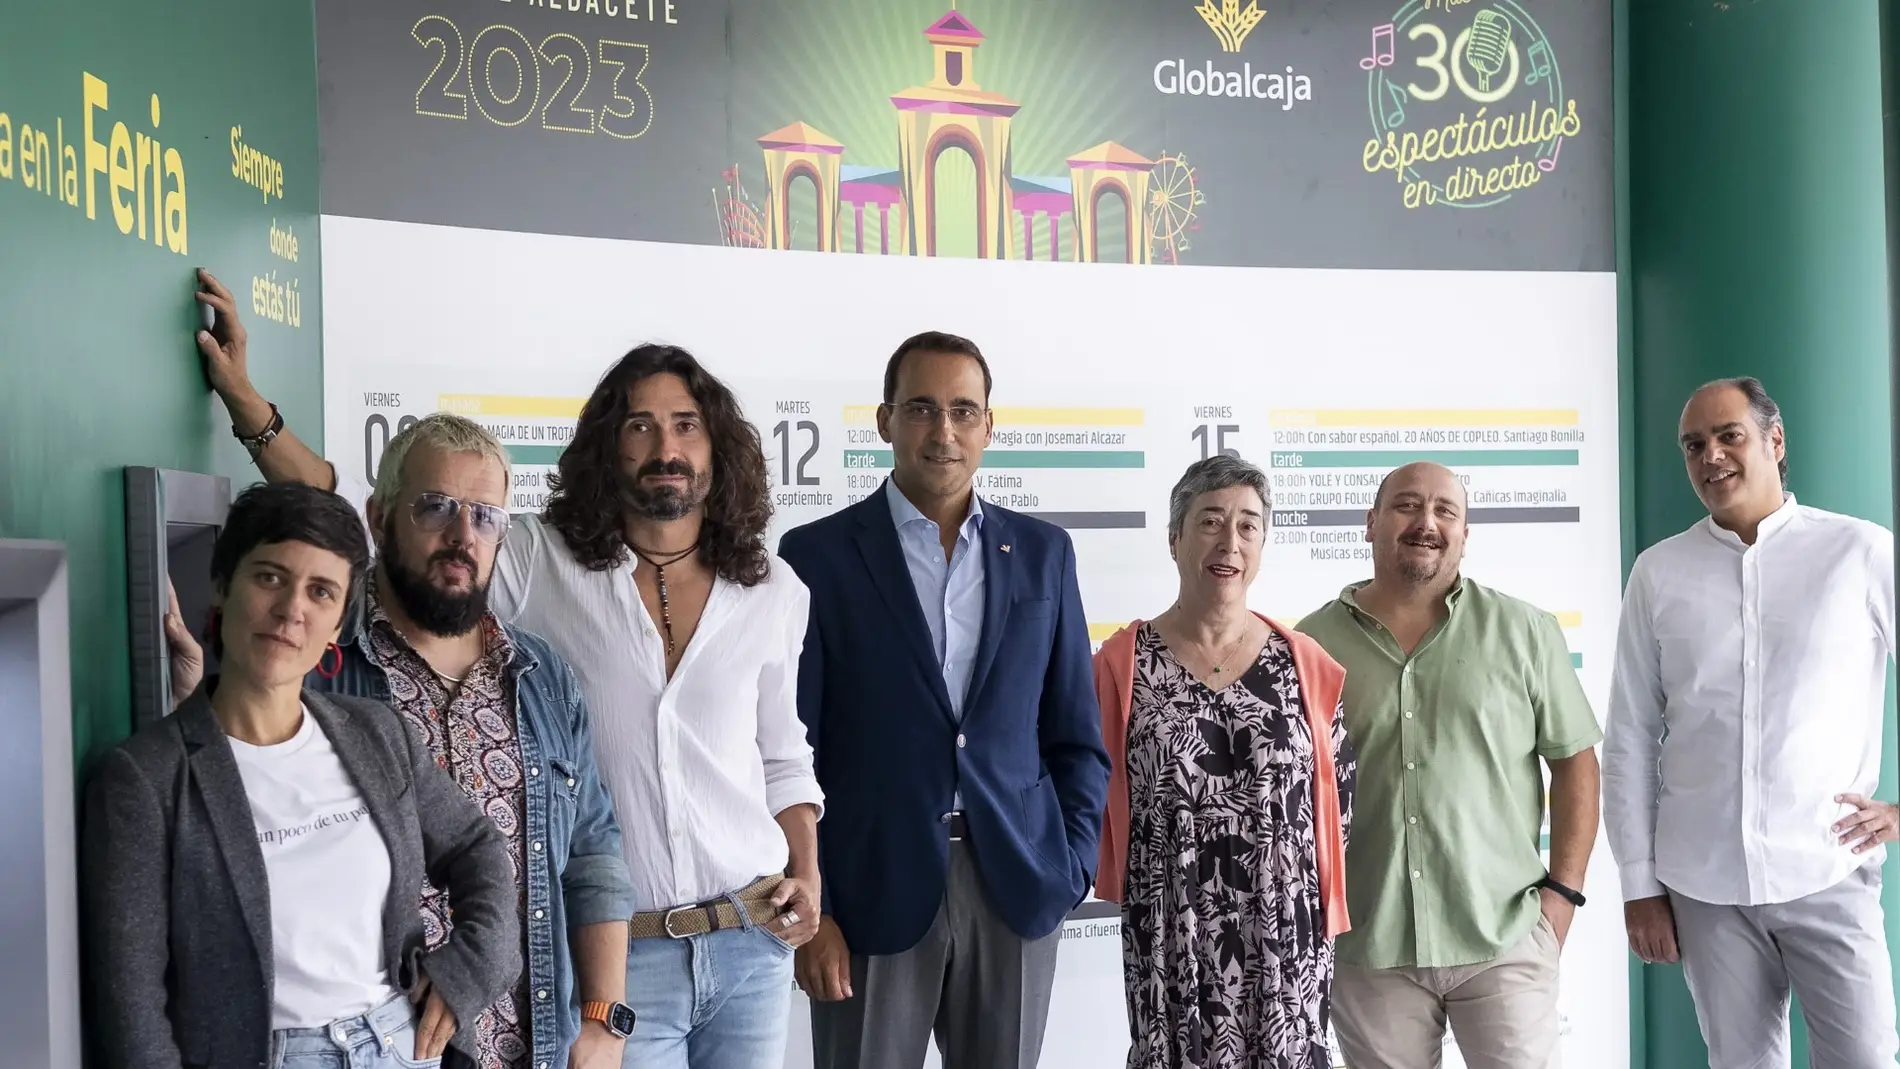 Globalcaja en la Feria de Albacete